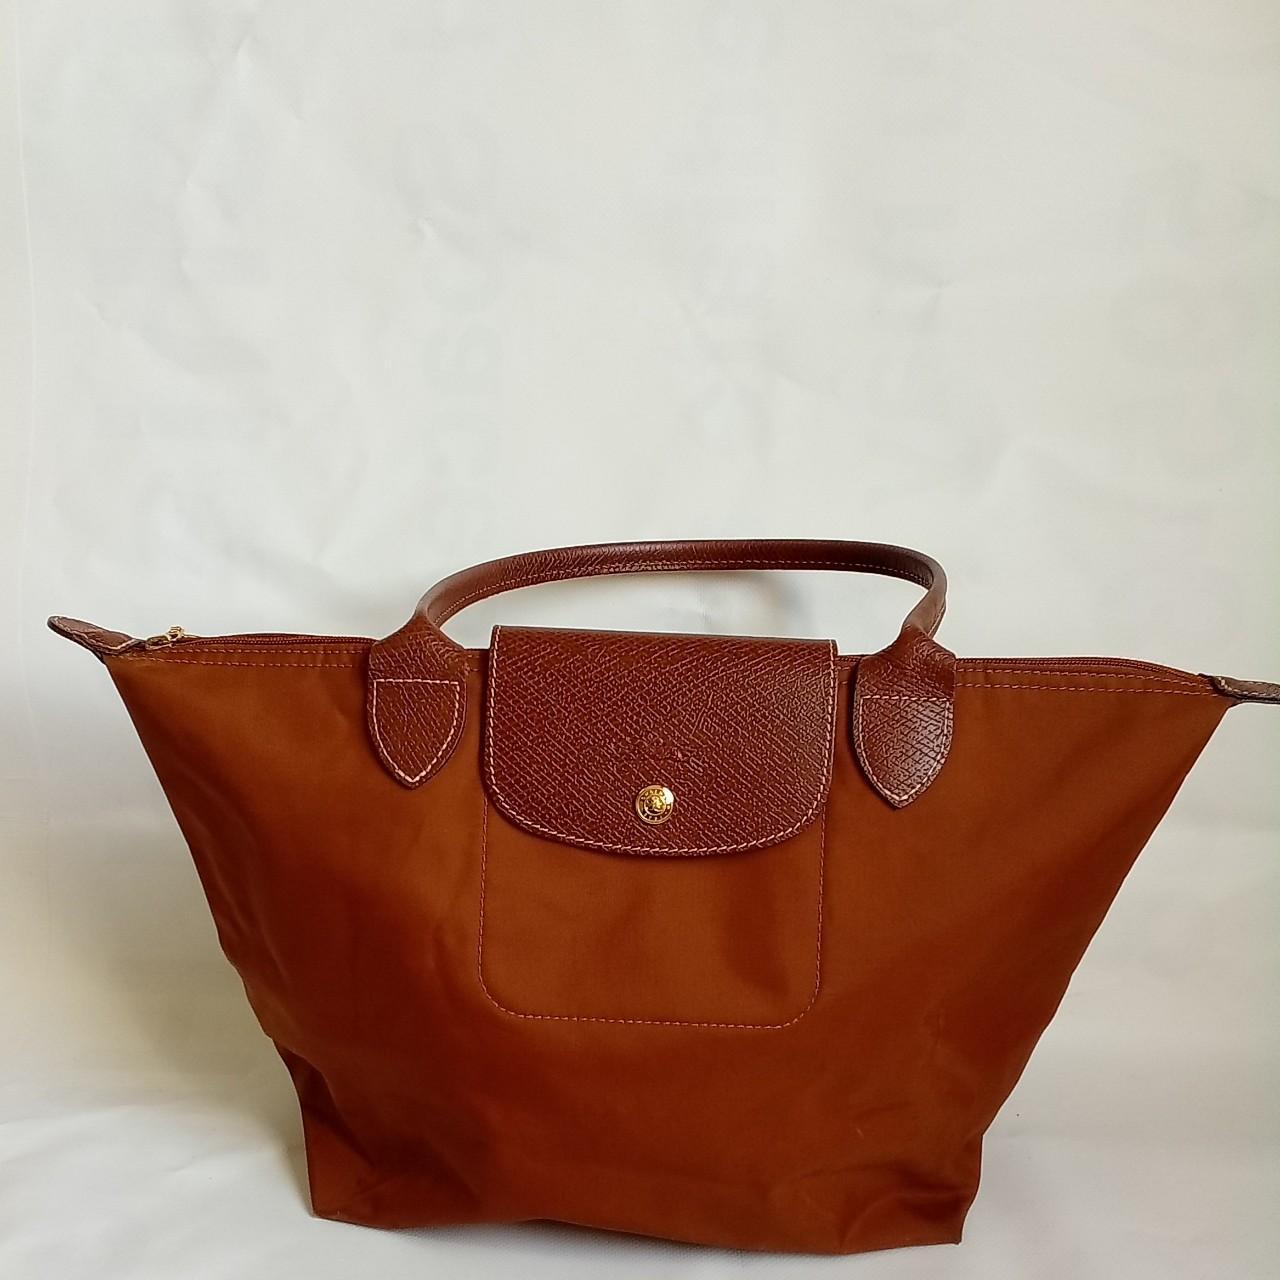 Longchamp Pliage Tote Bag M Size Orange Nylon... - Depop